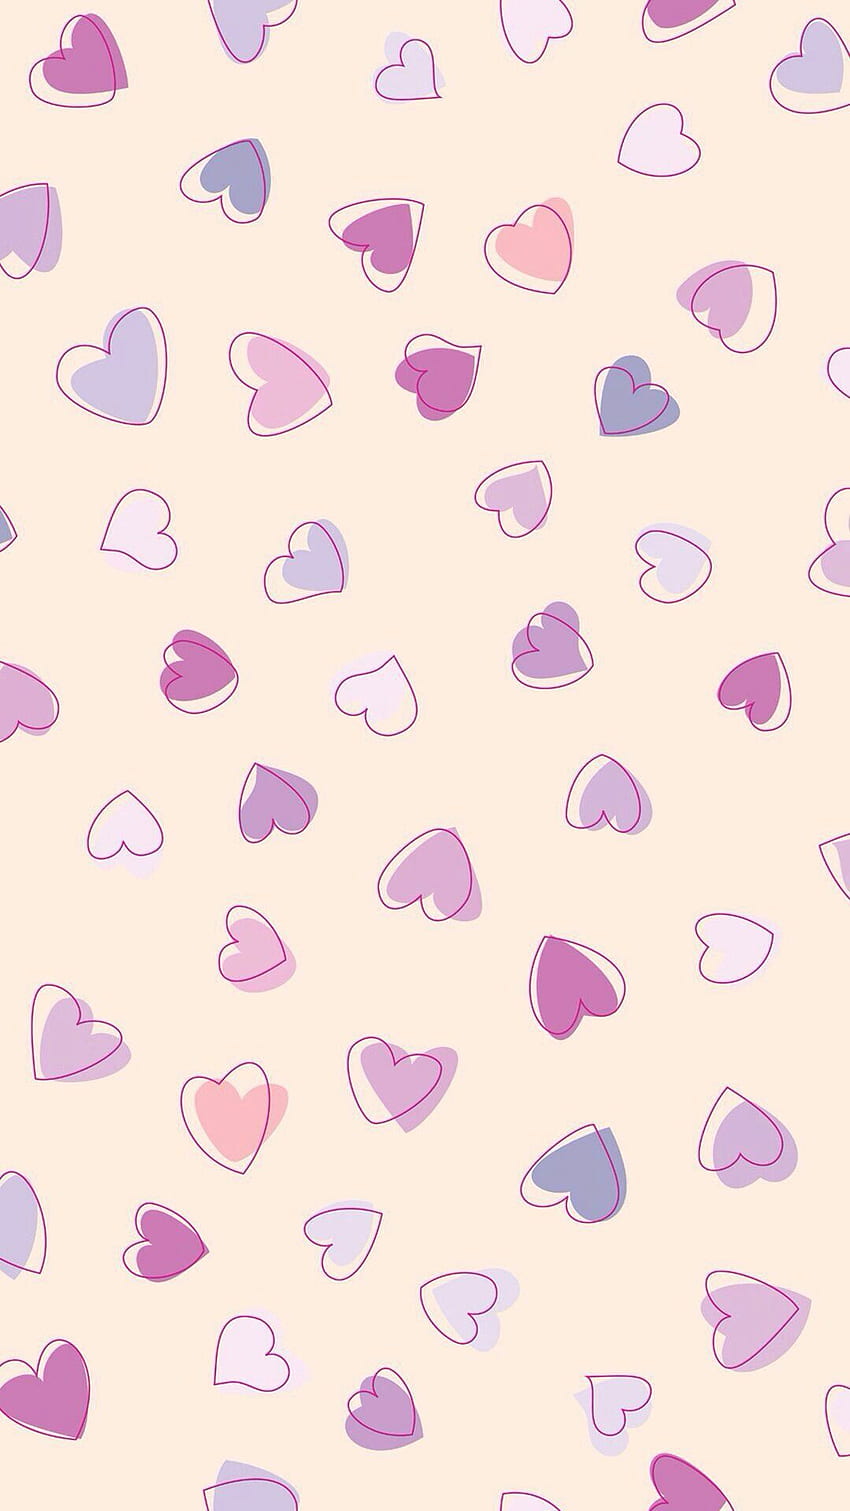 iPhone . Jantung, Ungu, Pola, Merah Muda, Lavender, Pola Girly wallpaper ponsel HD